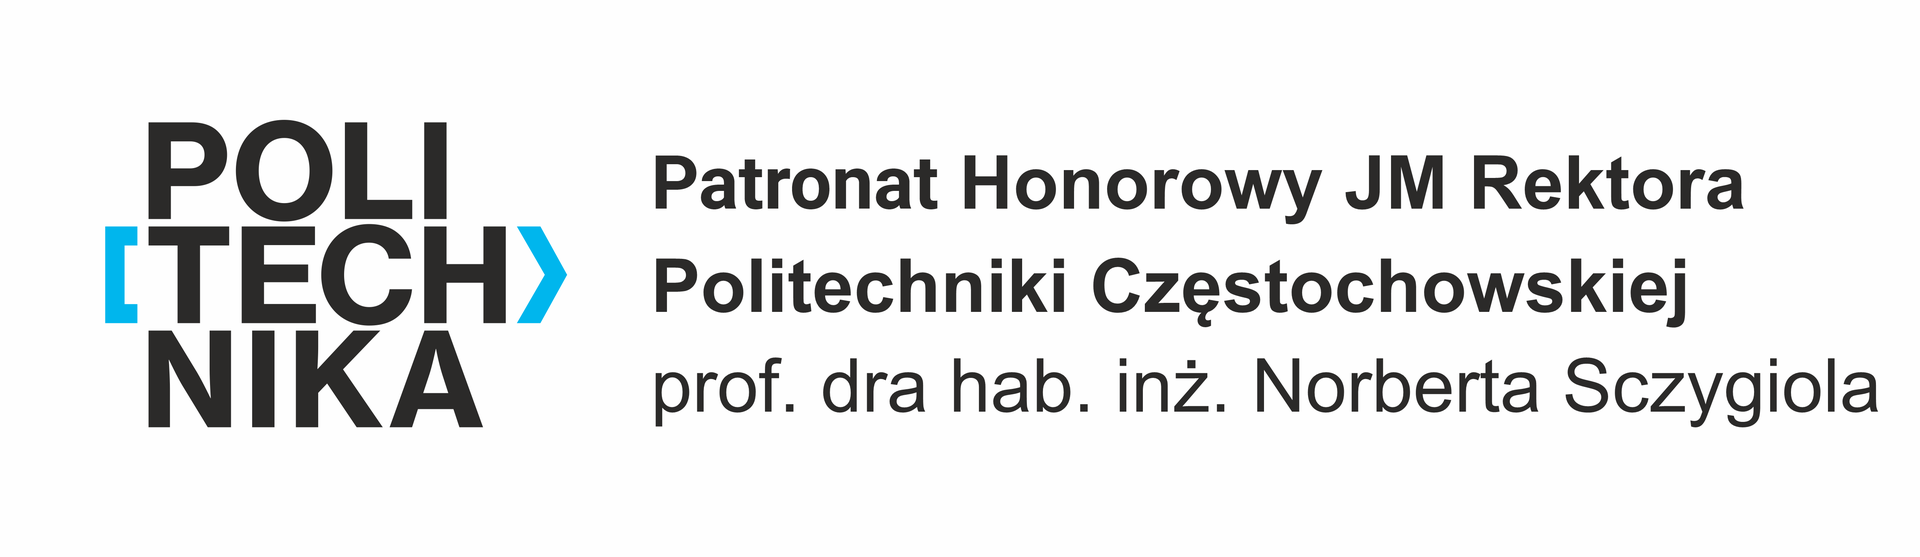 Patronat honorowy JM Rektora Politechniki Częstochowskiej